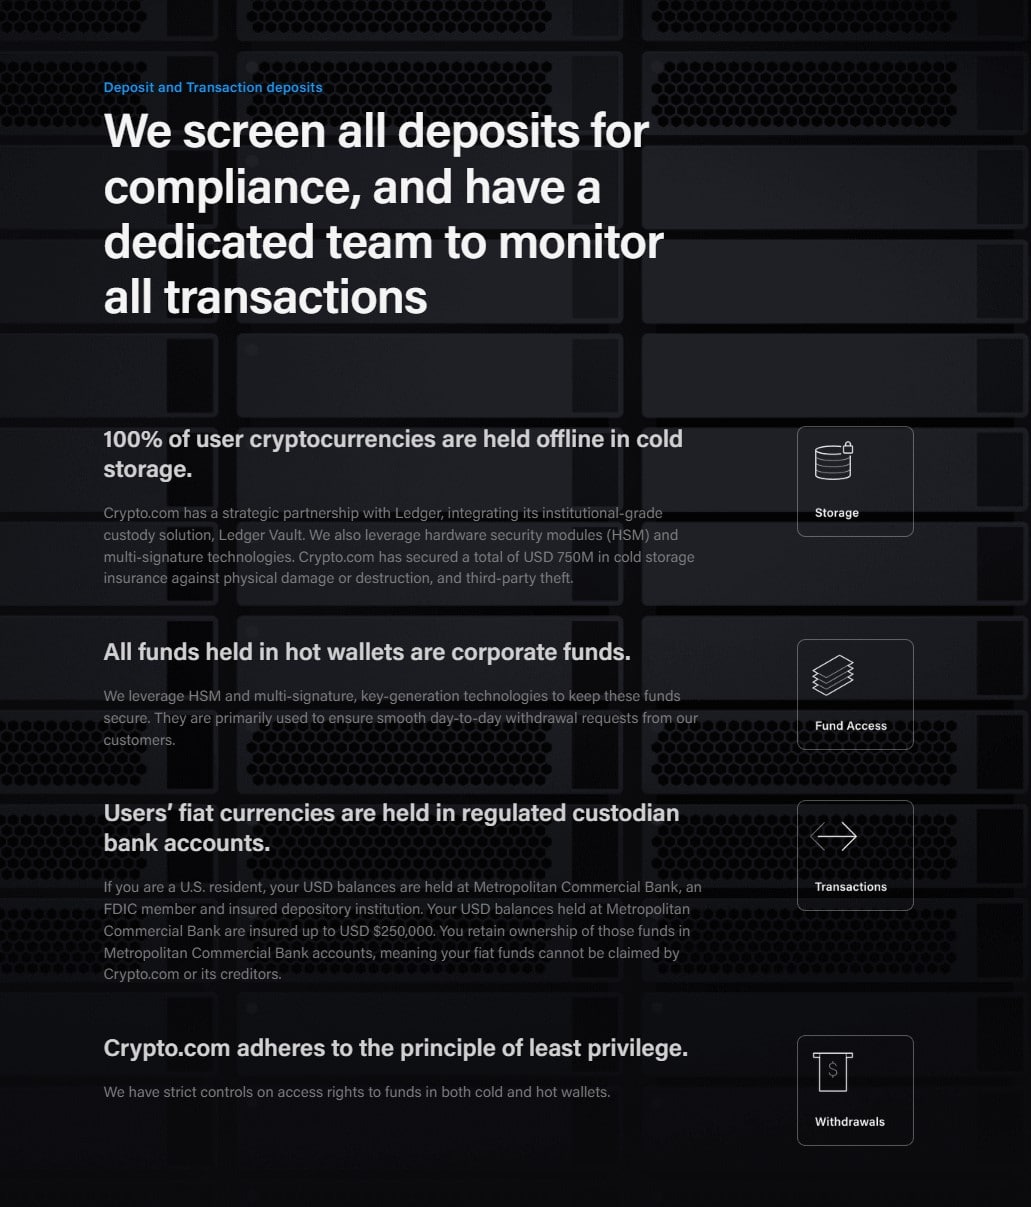 sicurezza di scambio crypto.com